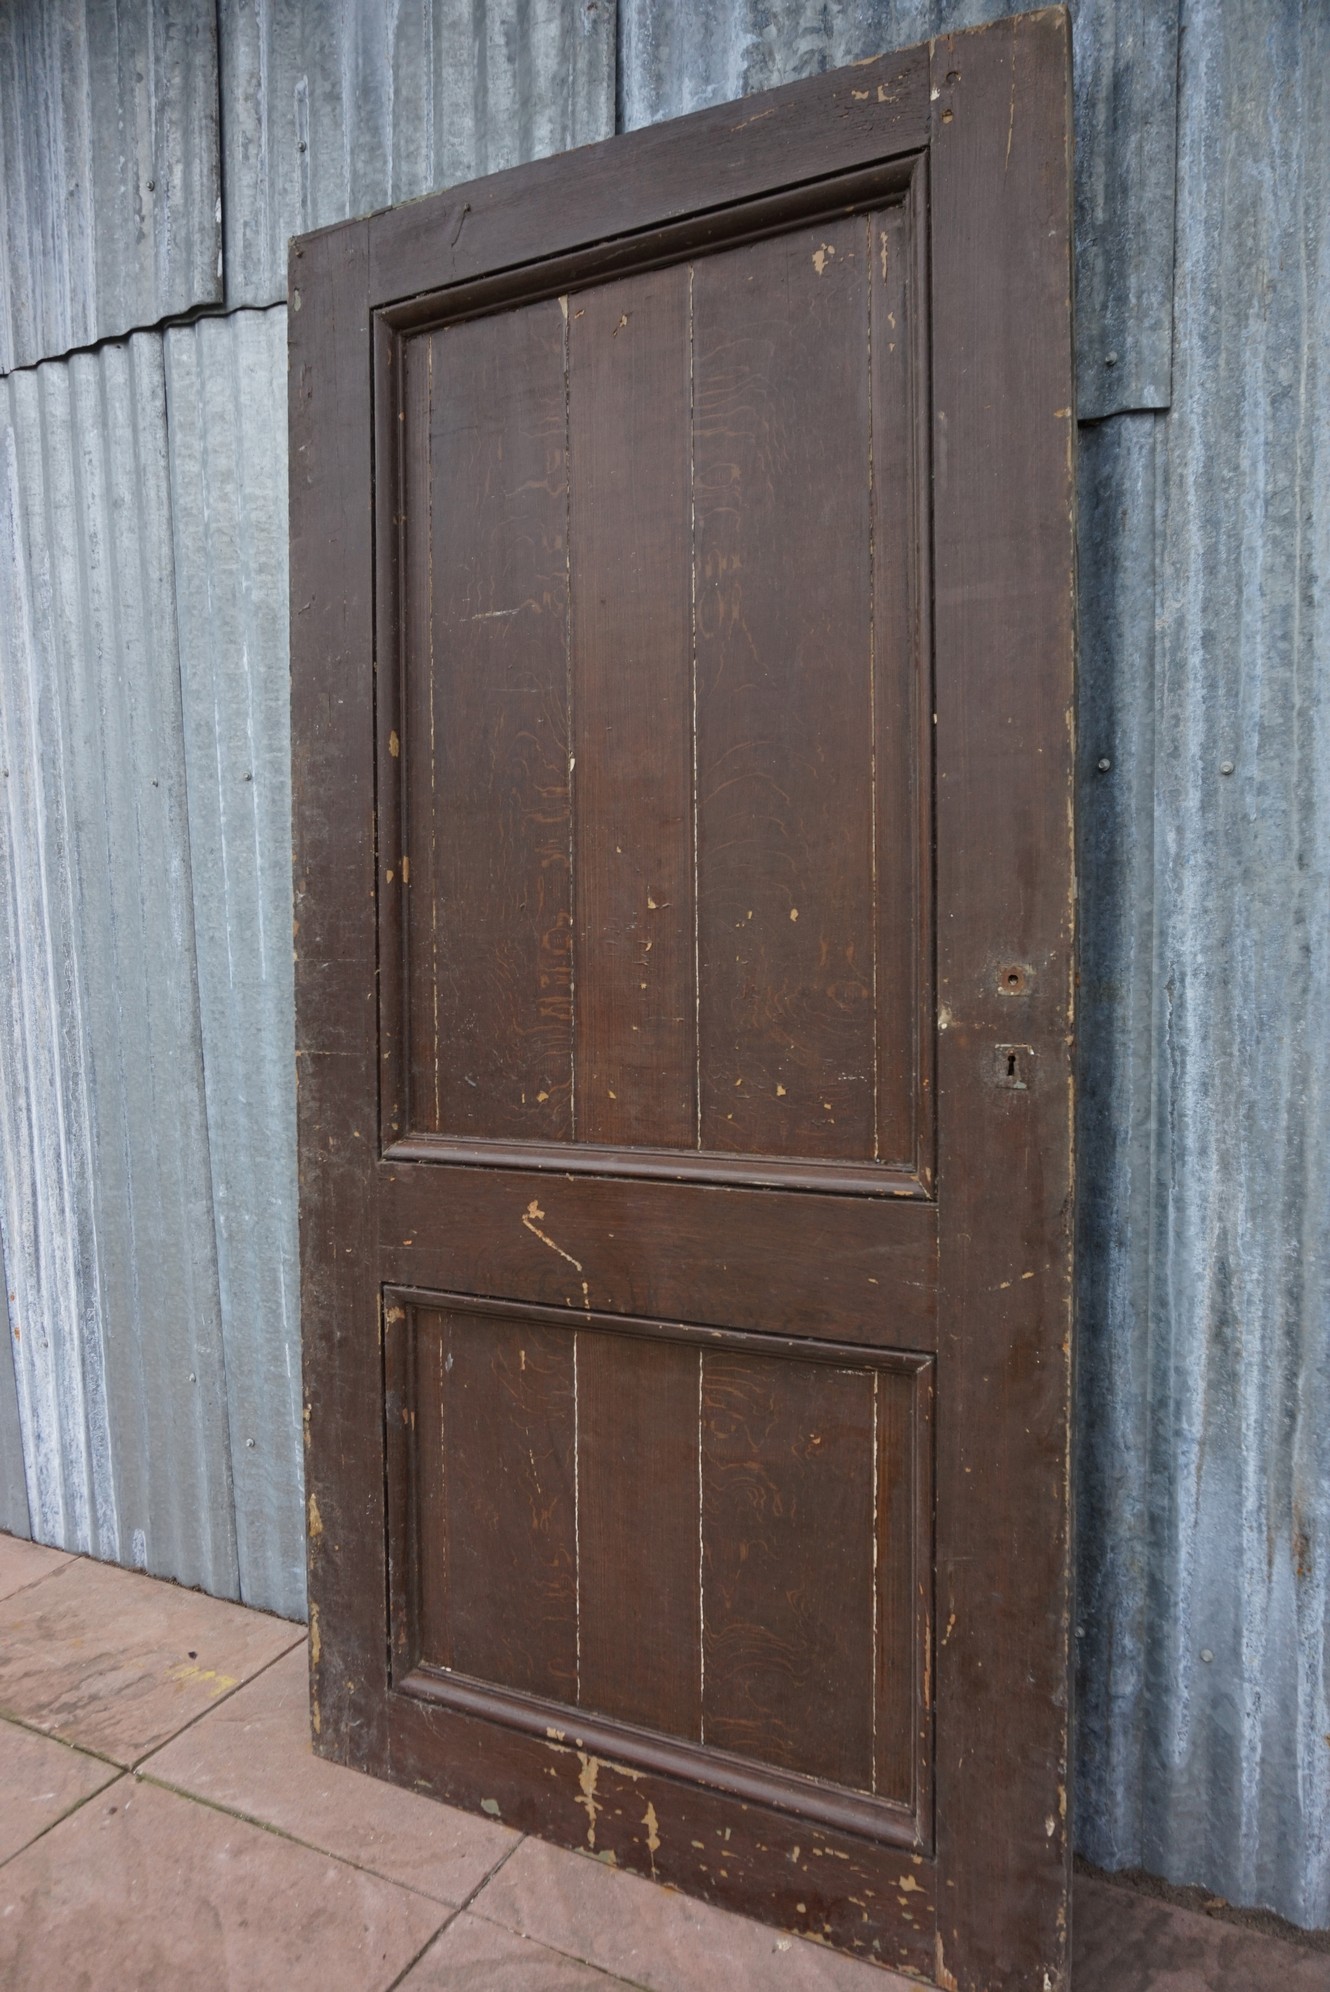 Hedendaags Antique sliding doors, industrial loft sliding doors HZ-24